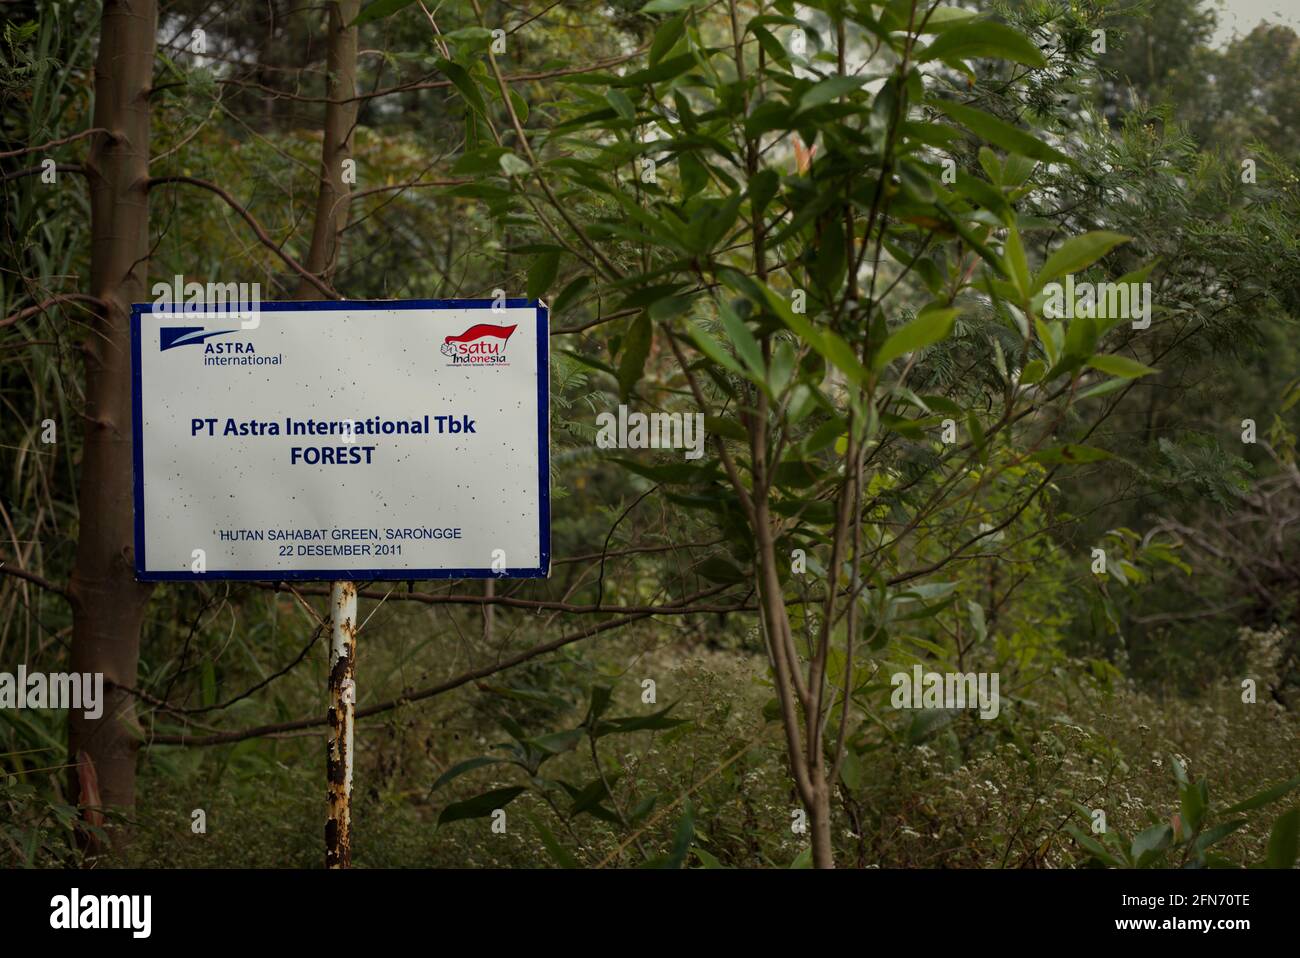 Una señalización para marcar un área asignada a plantar árboles adoptada por una corporación en un programa de adopción de árboles pocos años antes, parte del proyecto de reforestación dentro del Parque Nacional Mount Gede Pangrango, Java Occidental, Indonesia; fotografiado durante el Festival Sarongge 2015. Foto de stock